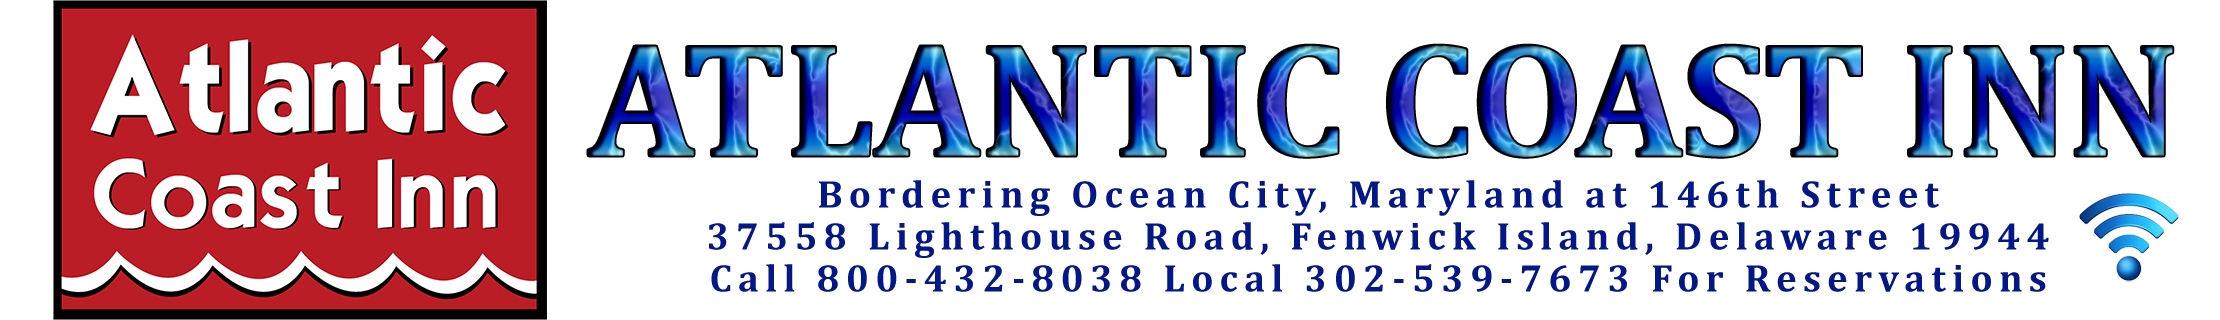 Ocean City Maryland, Fenwick Island Delaware Hotels, Motels